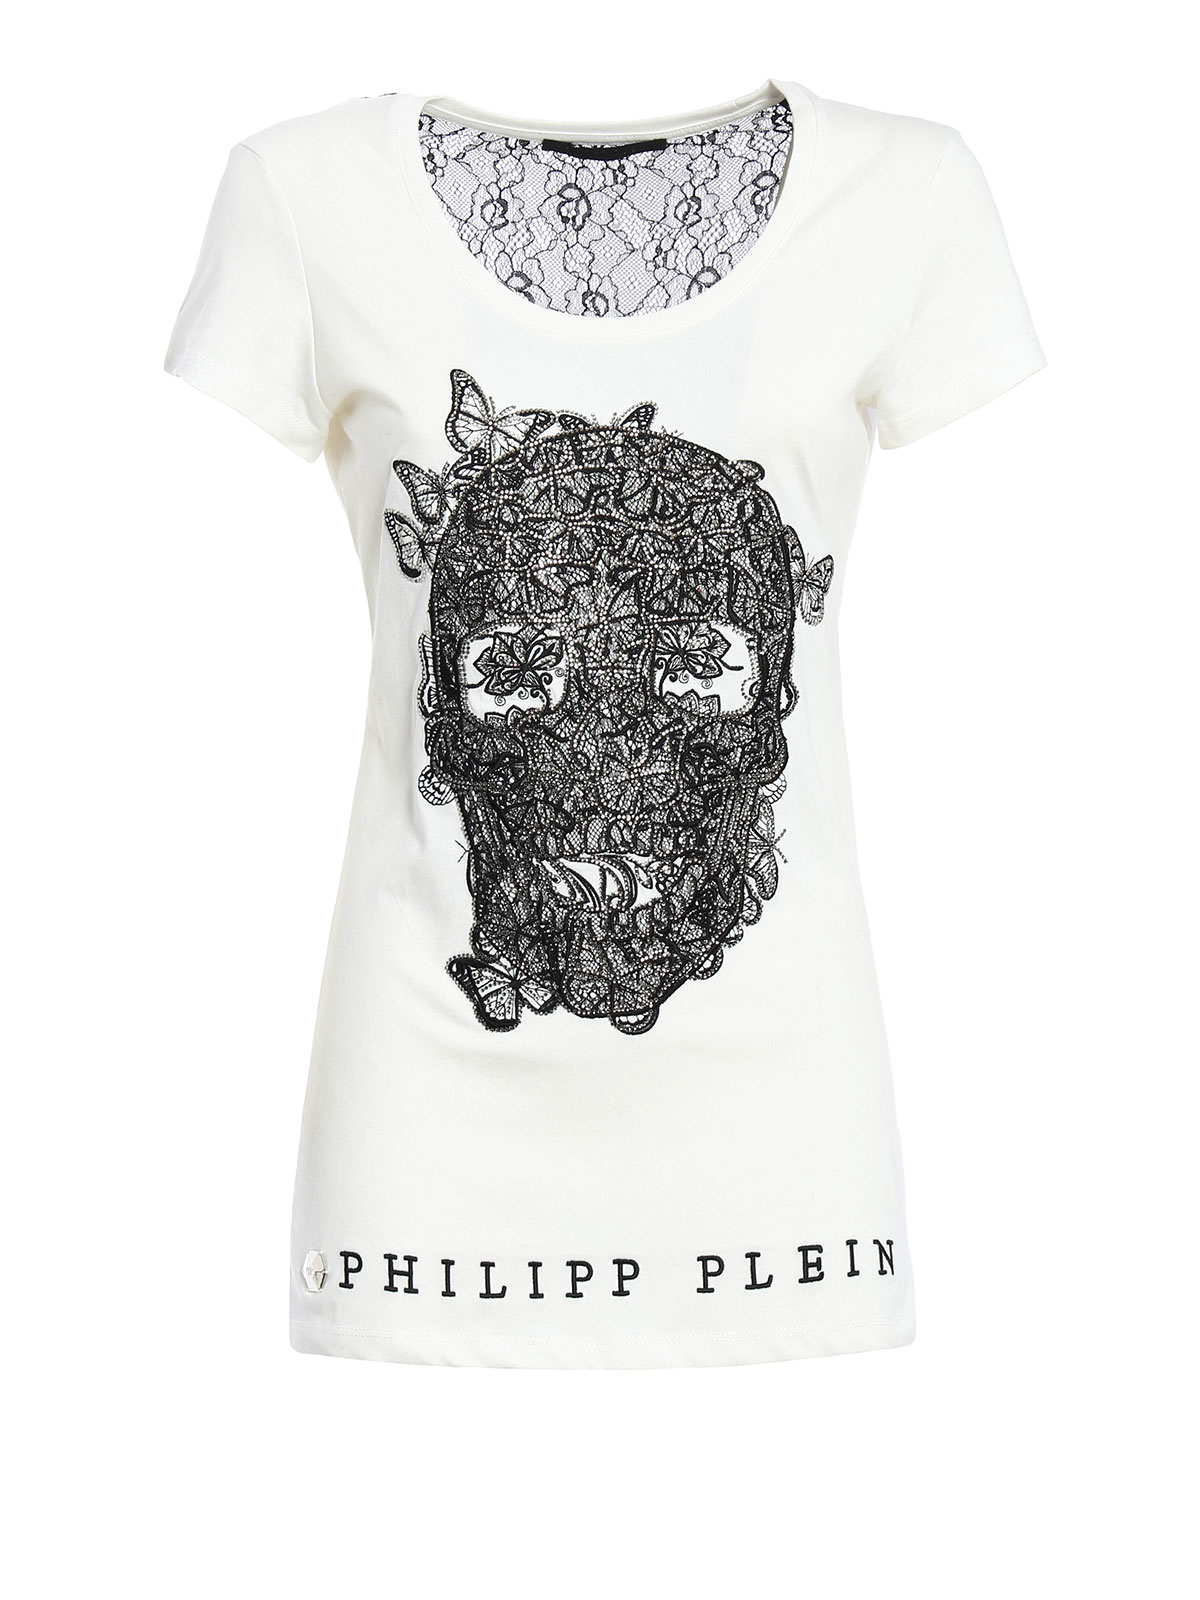 Camisetas Philipp Plein - Camiseta Blanca Mujer CW34094601